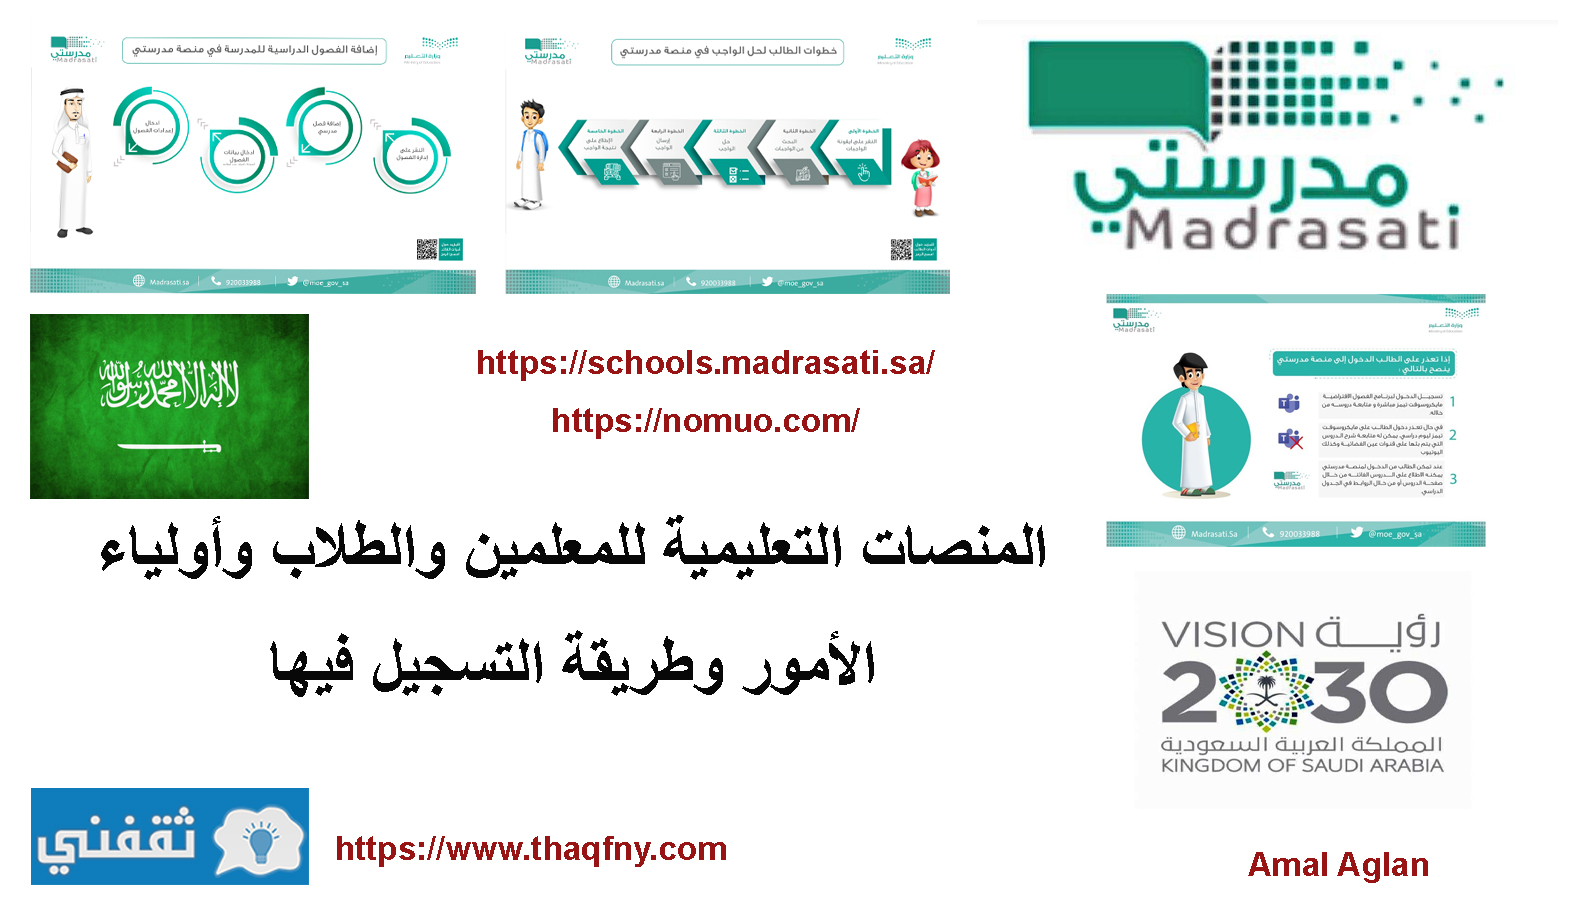 المنصات التعليمية للمعلمين والطلاب وأولياء الأمور وطريقة التسجيل فيها بالسعودية